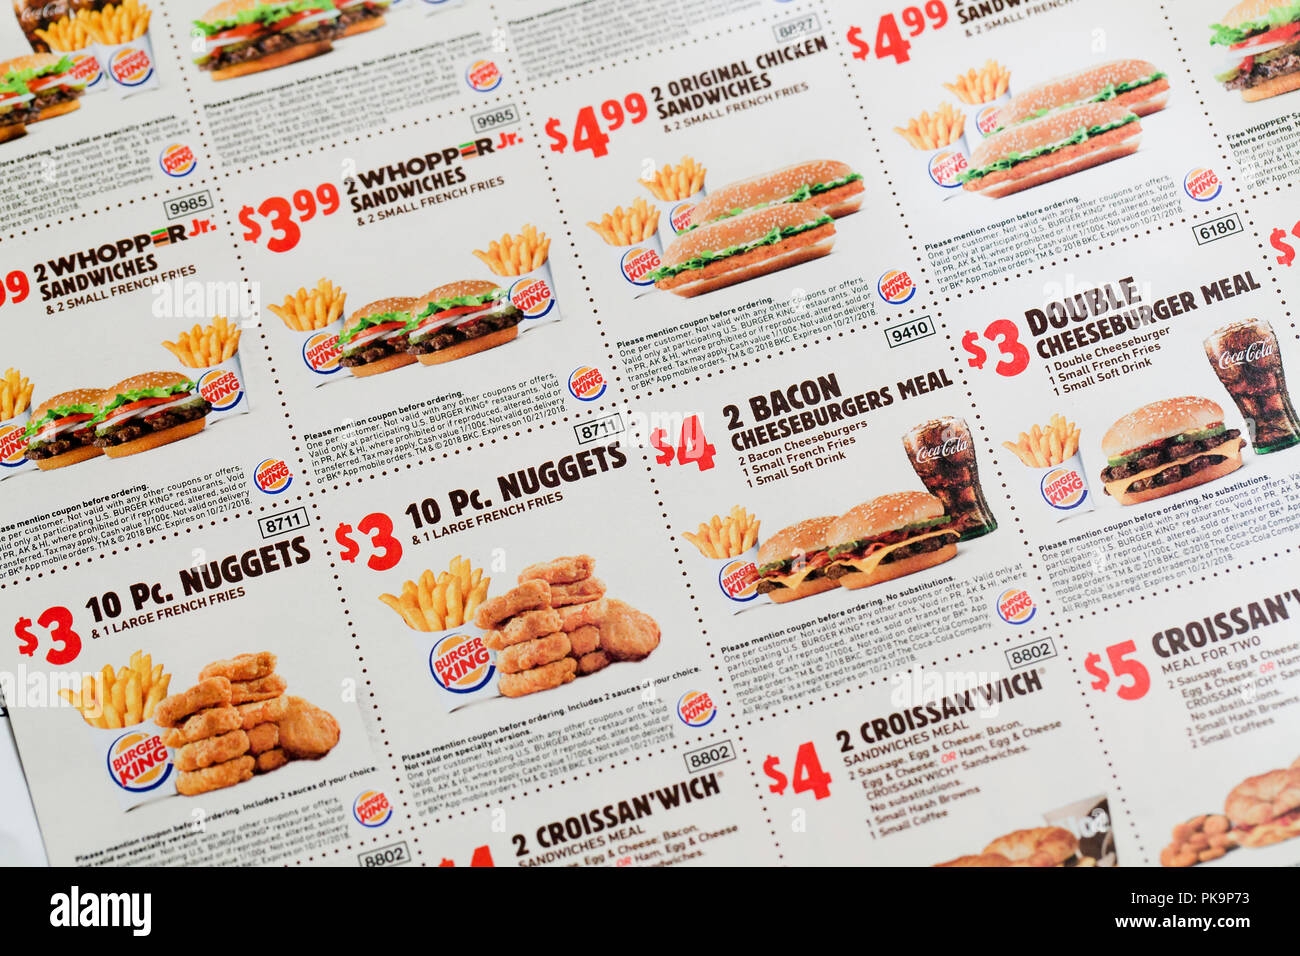 Burger King Coupons fast Food Coupon USA Stock Photo Alamy - Burger King Free Coupons Printable